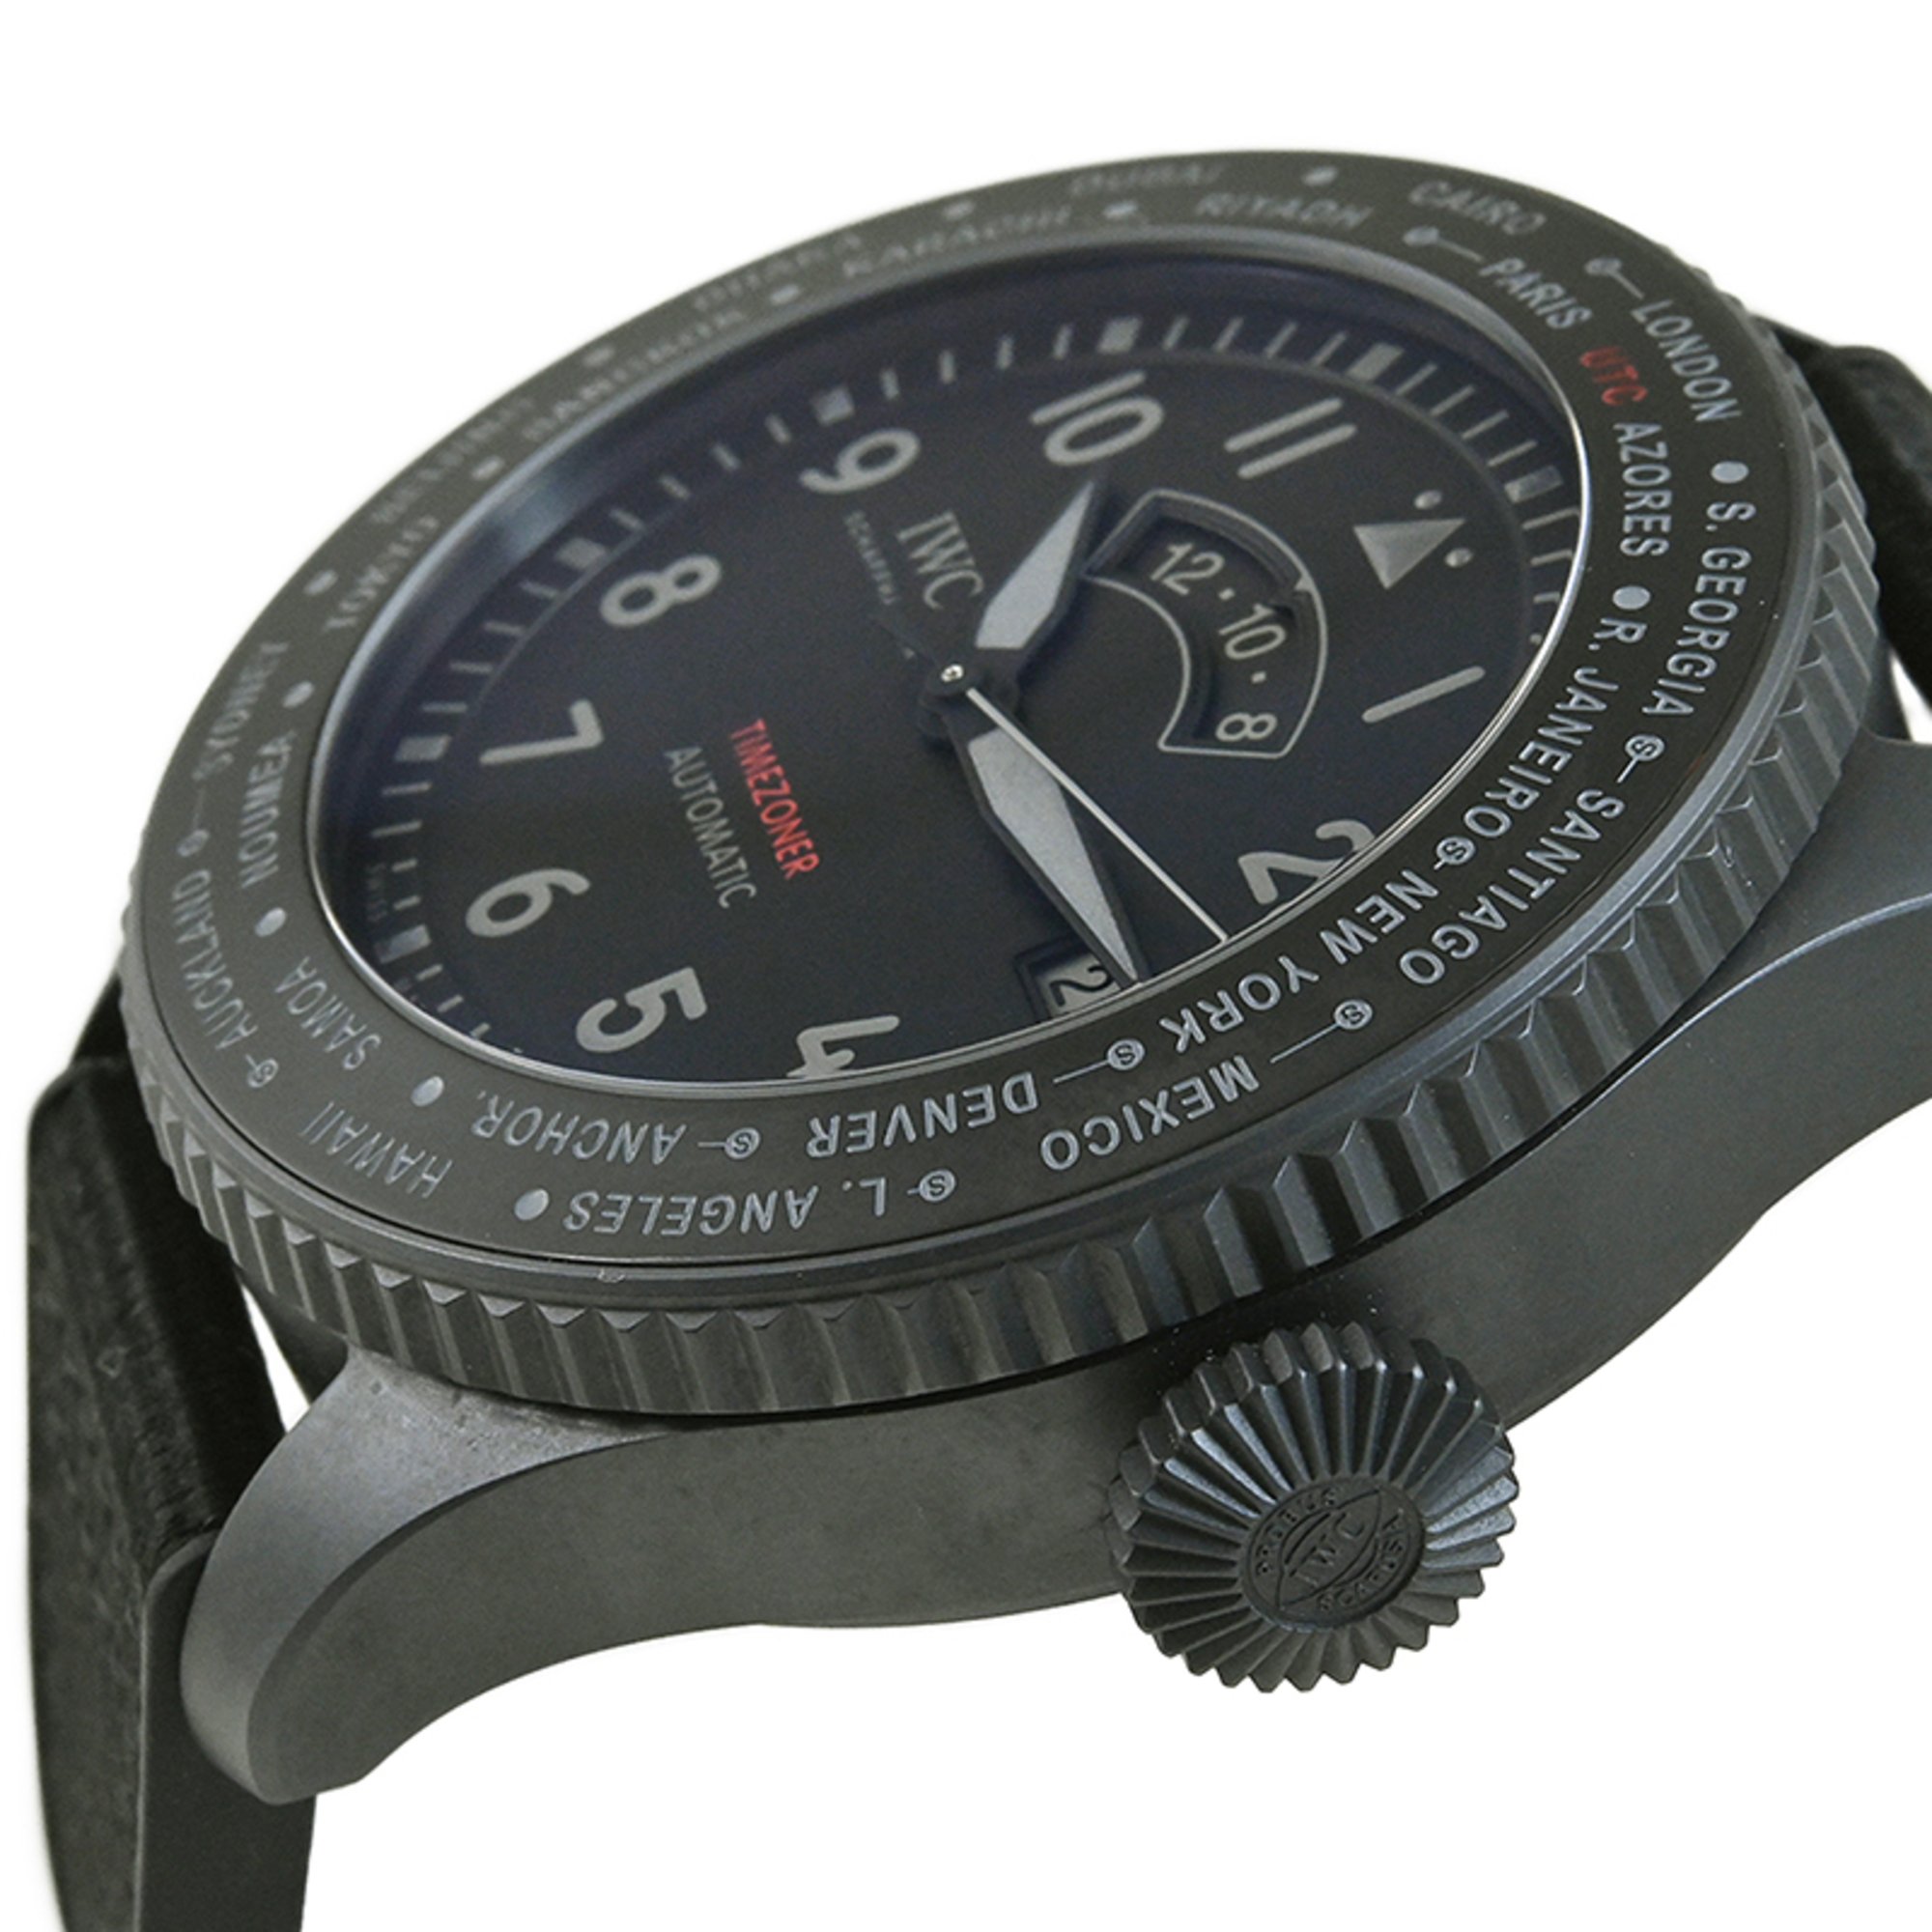 IWC Pilot Watch Timezoner Top Gun Ceratanium IW395505